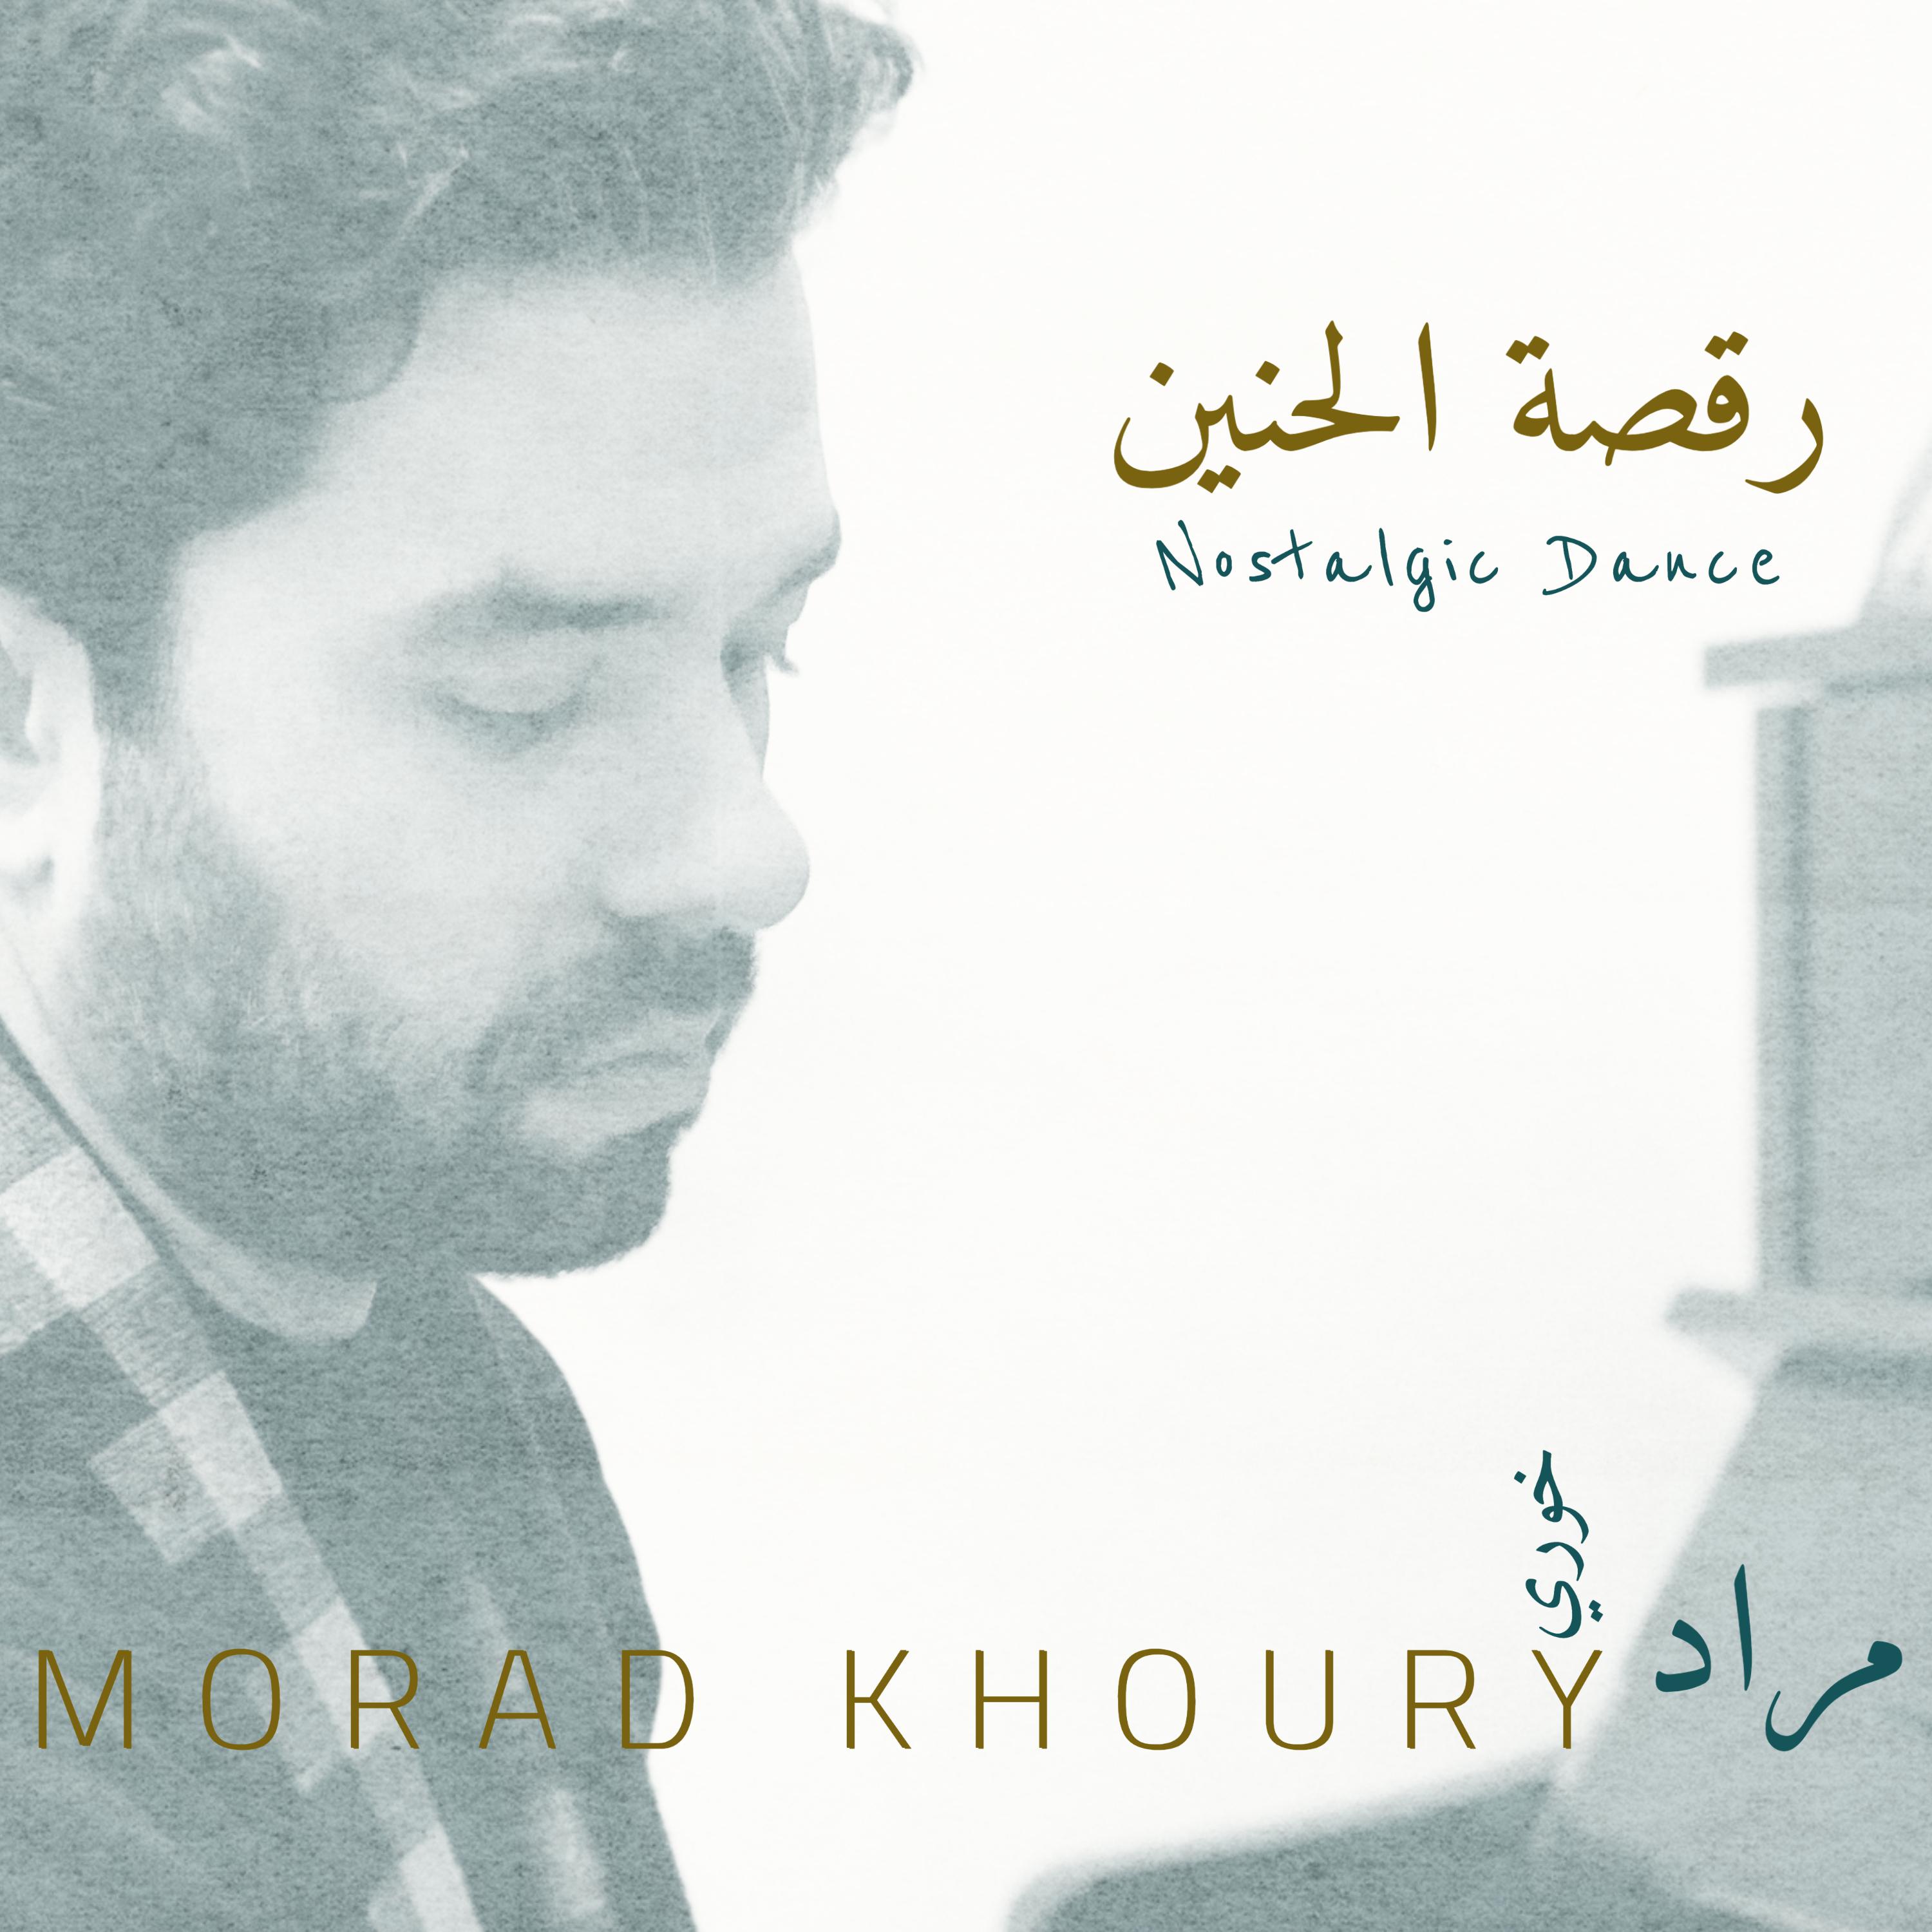 Morad Khoury - Nostalgic Dance